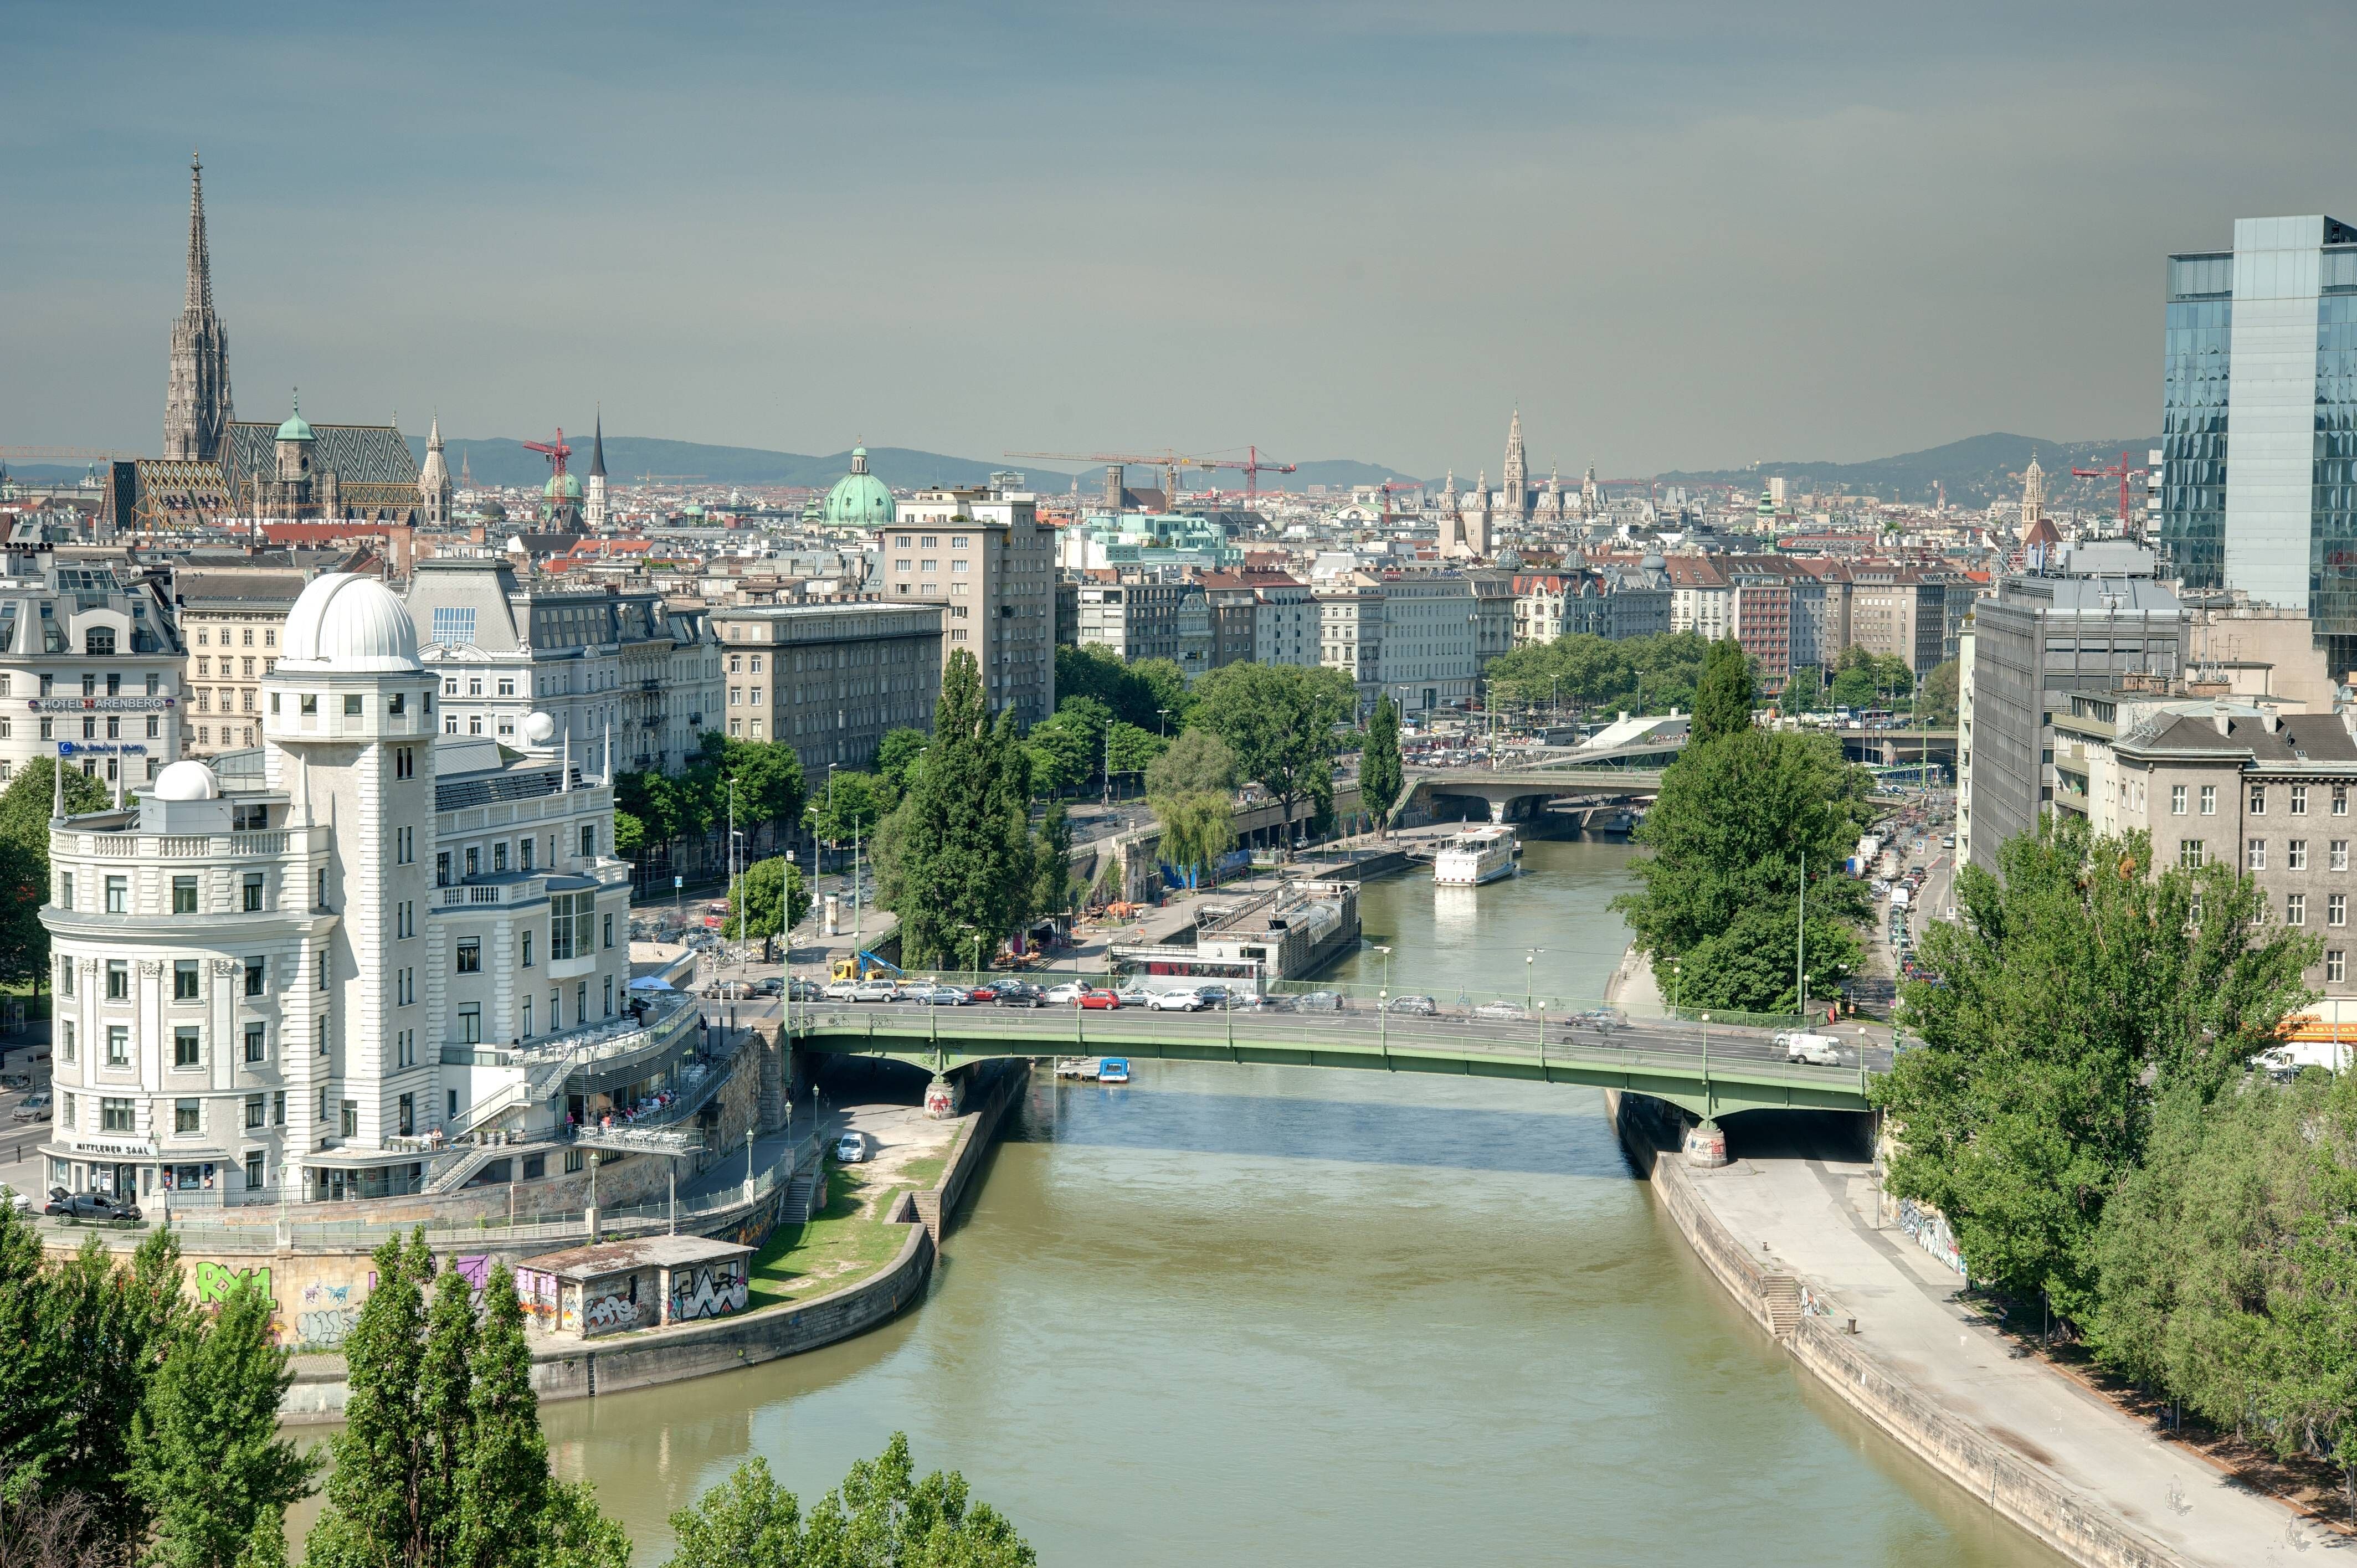 Alle Jahre wieder führt Wien die Liste der "lebenswertesten Städte" in verschiedenen Rankings an. Die österreichische Hauptstadt punktet mit einem reichhaltigen Kultur- und Freizeitangebot, guter Wasser- und Luftqualität und - ganz im Gegensatz zu anderen Metropolen - mit vergleichsweise günstigen Mietpreisen.